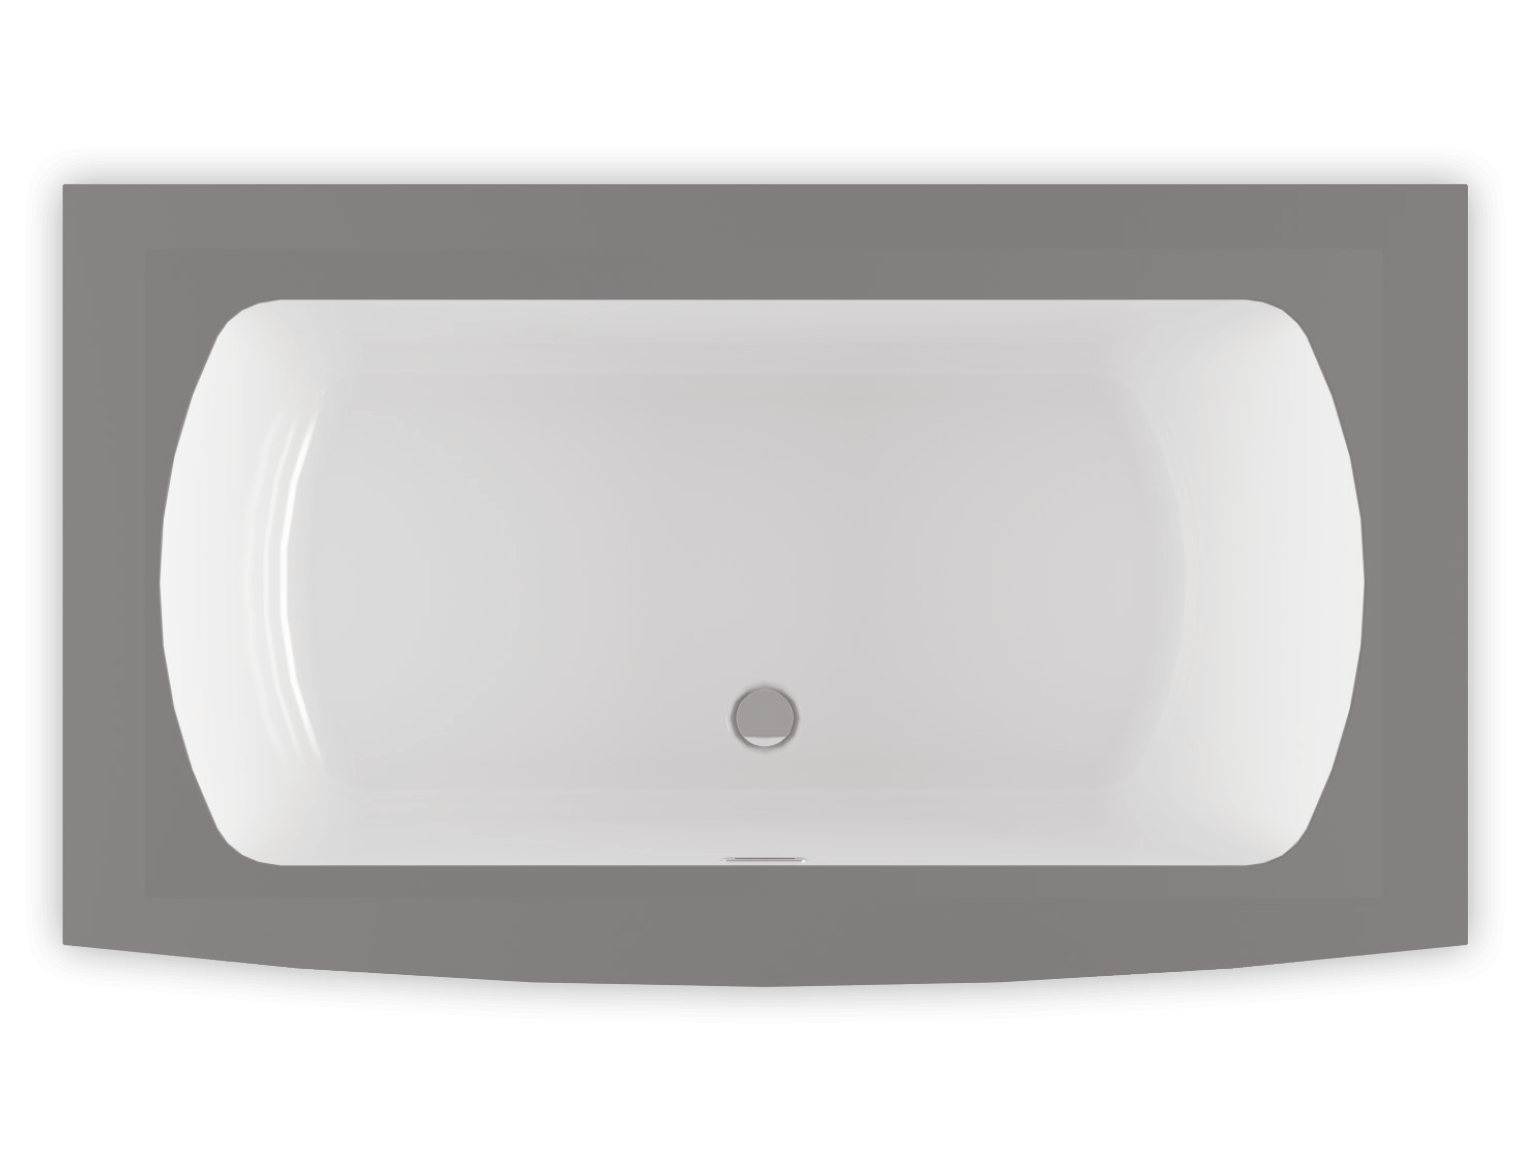 Monarch 7238F air jet bathtub for your modern bathroom